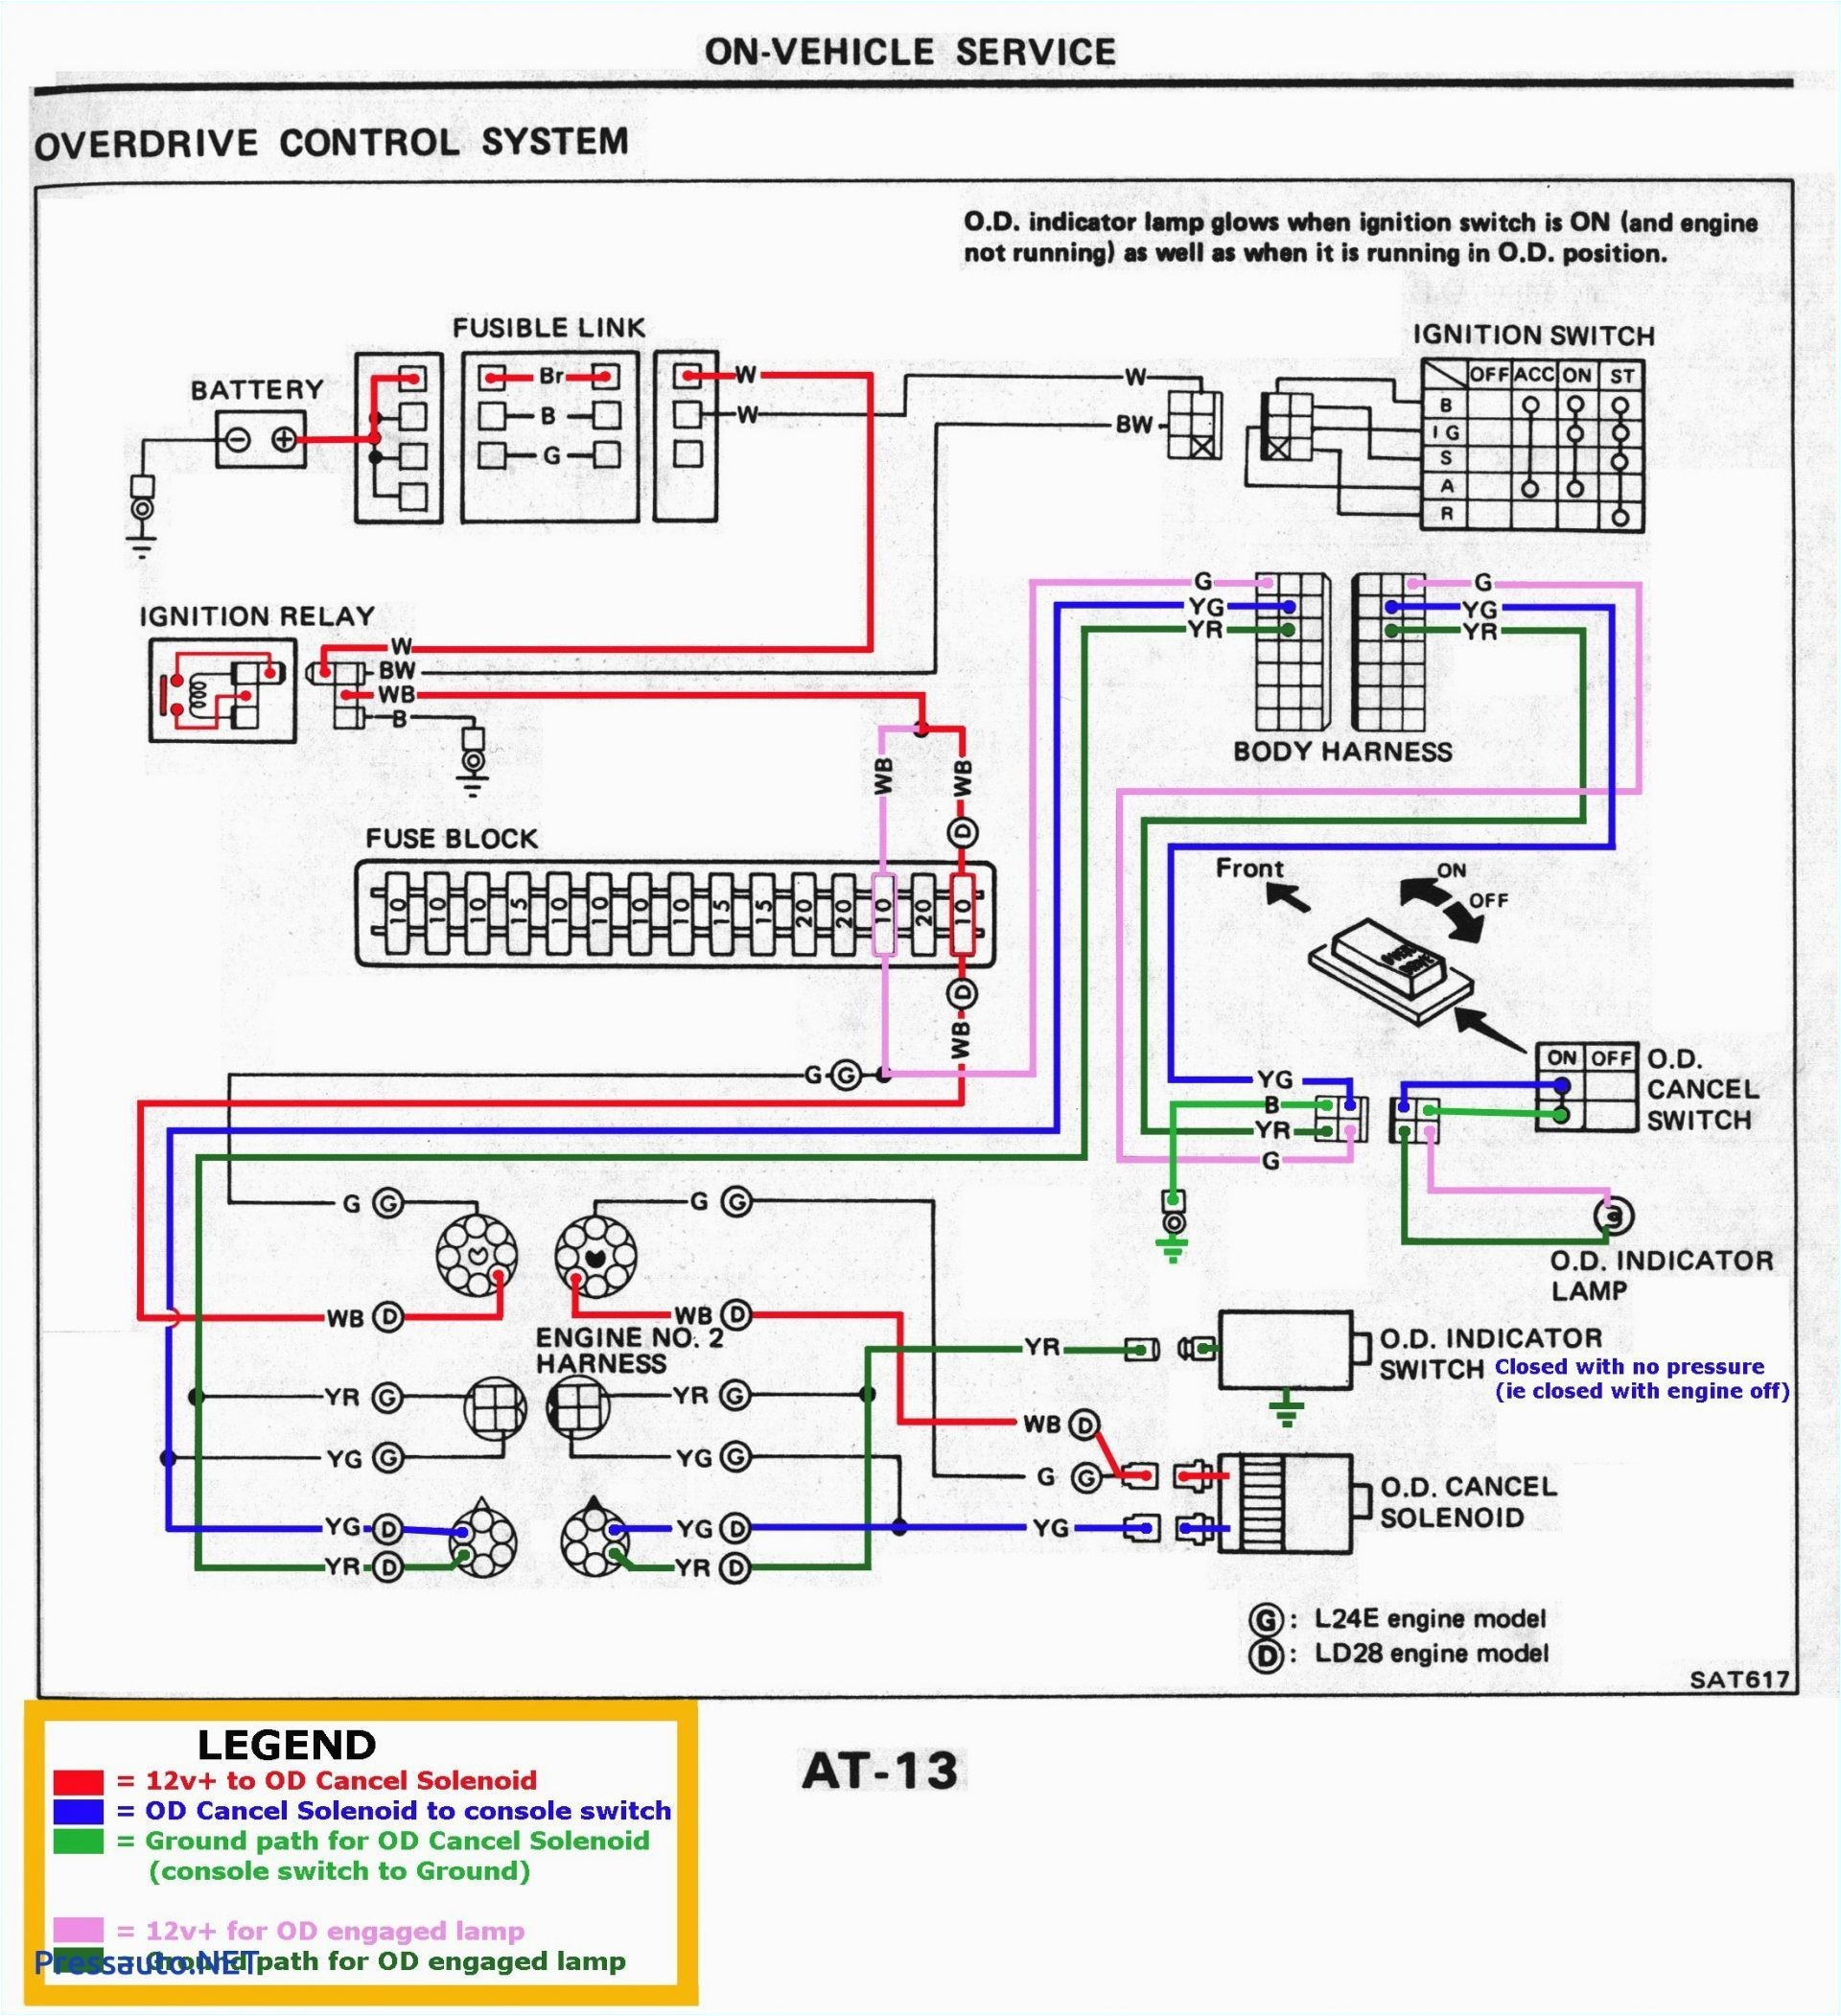 bs2 wiring diagram wiring diagramle9 wiring diagram wiring diagram namele9 wiring diagram my wiring diagram le9